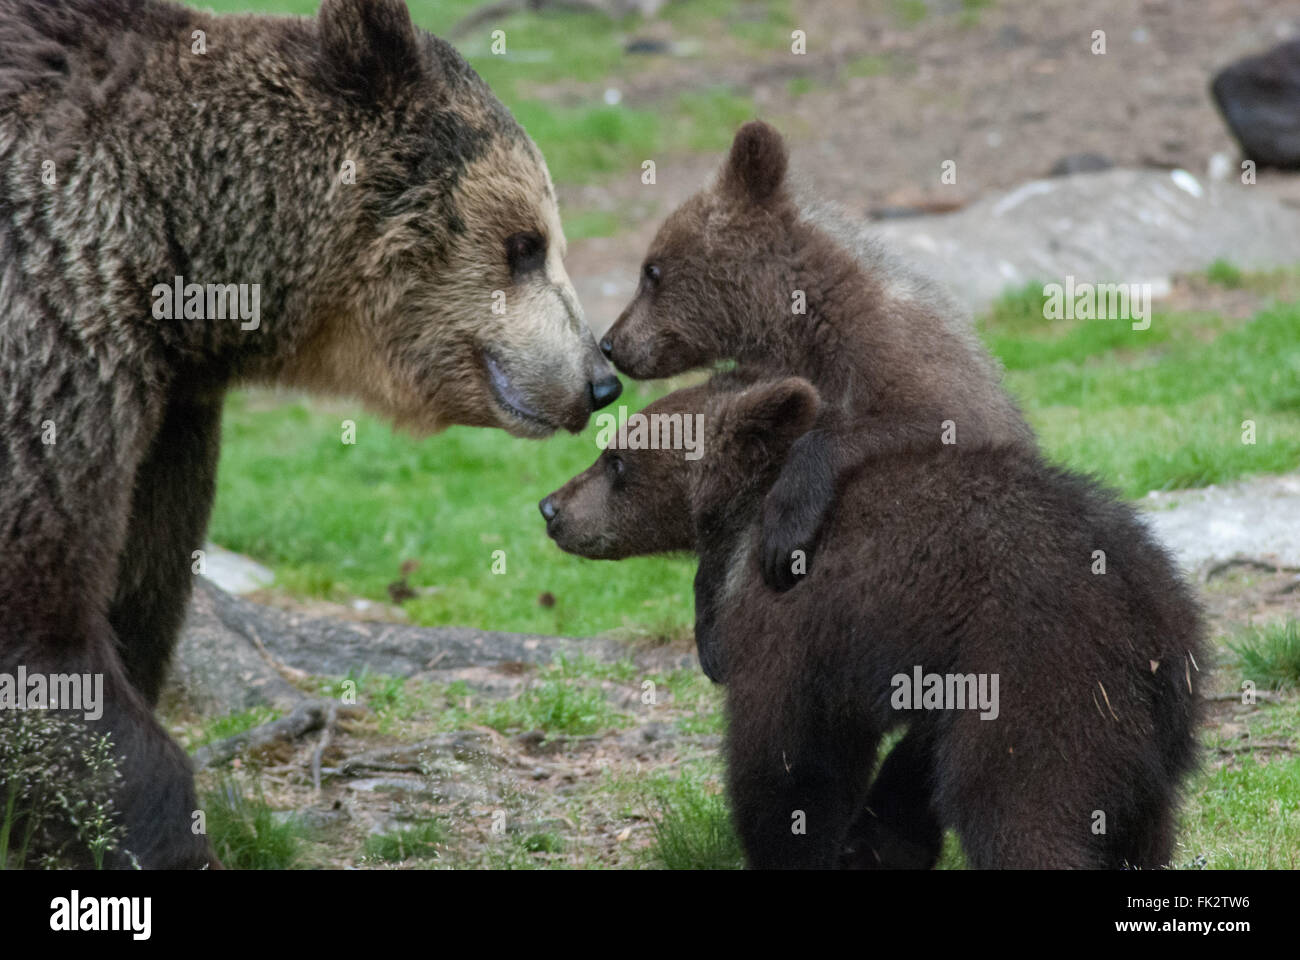 Unione di orso bruno eurasiatico o orso bruno ( Ursus arctos arctos) madre e due Lupetti nella Taiga foresta in Finlandia orientale Foto Stock